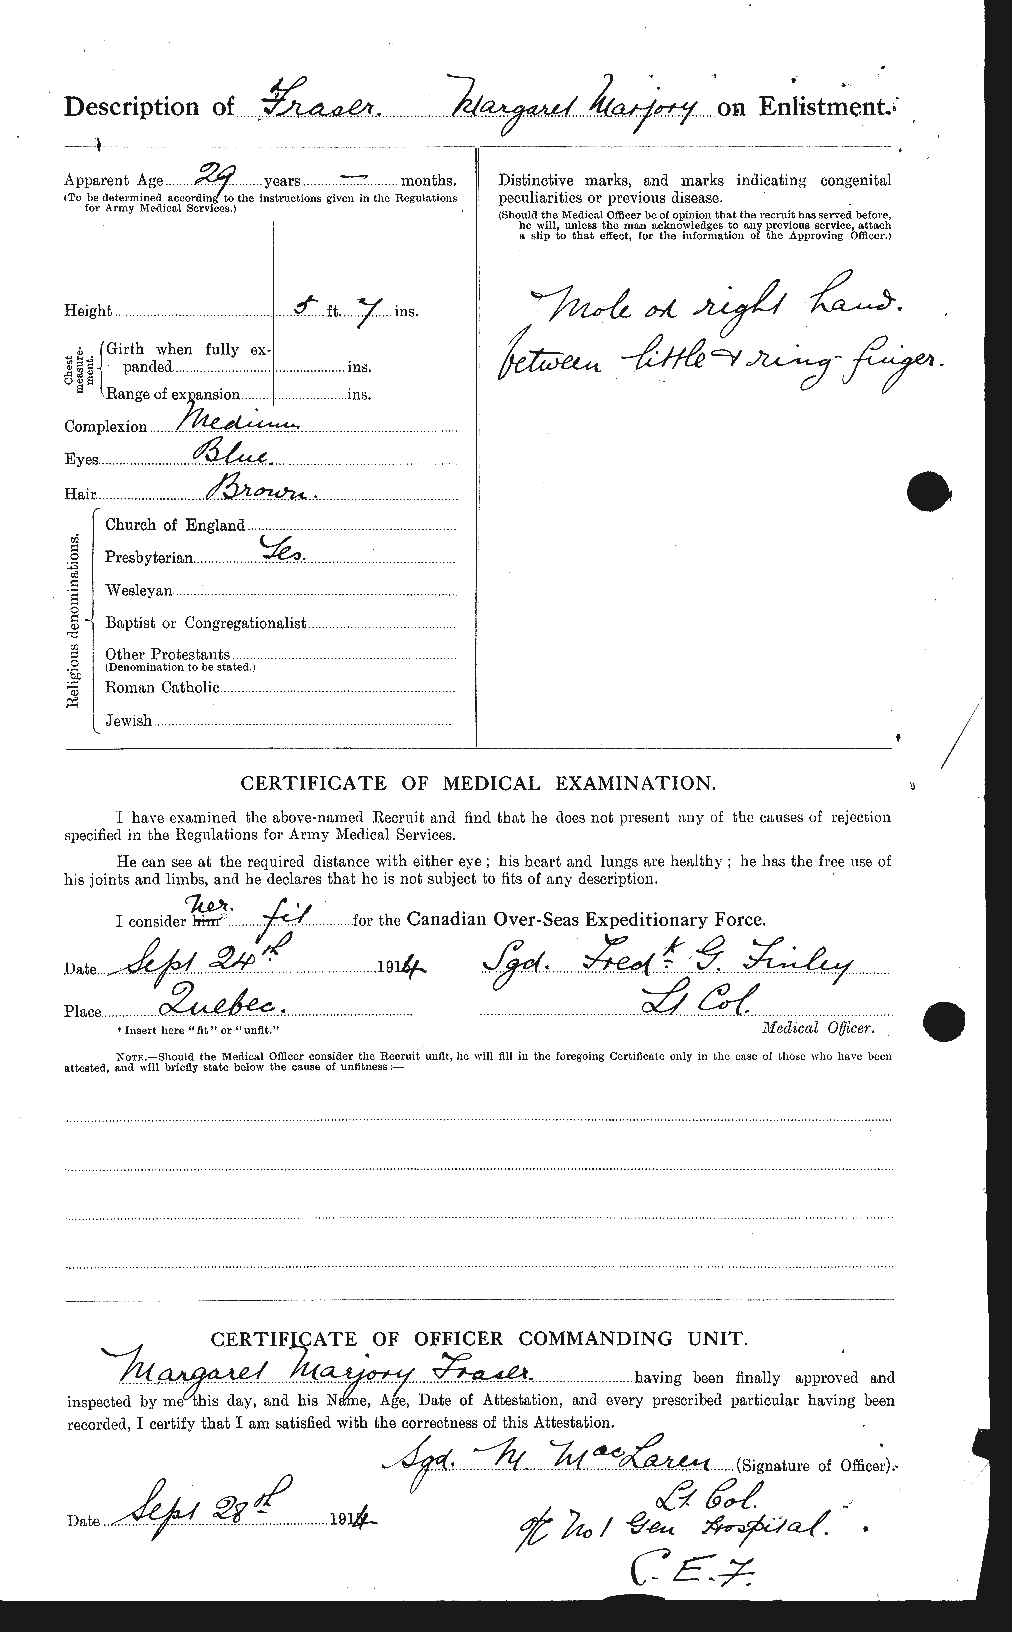 Dossiers du Personnel de la Première Guerre mondiale - CEC 334228b